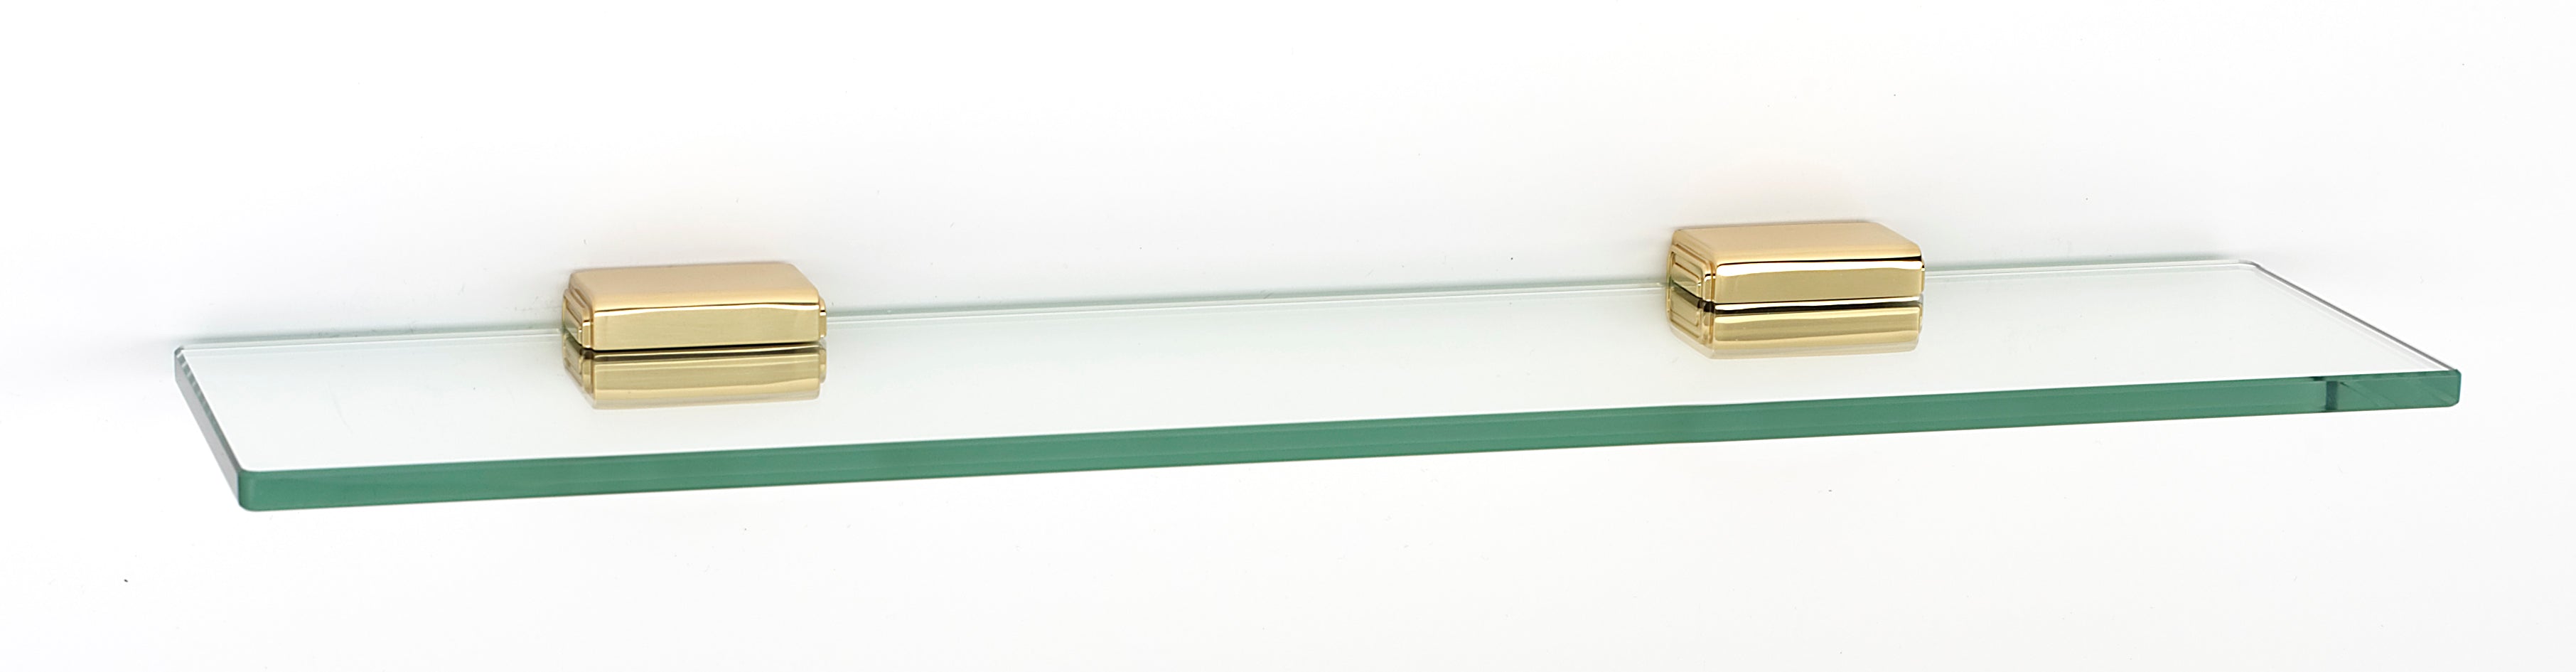 Alno Cube Bath 18" Glass Shelf w/Brackets